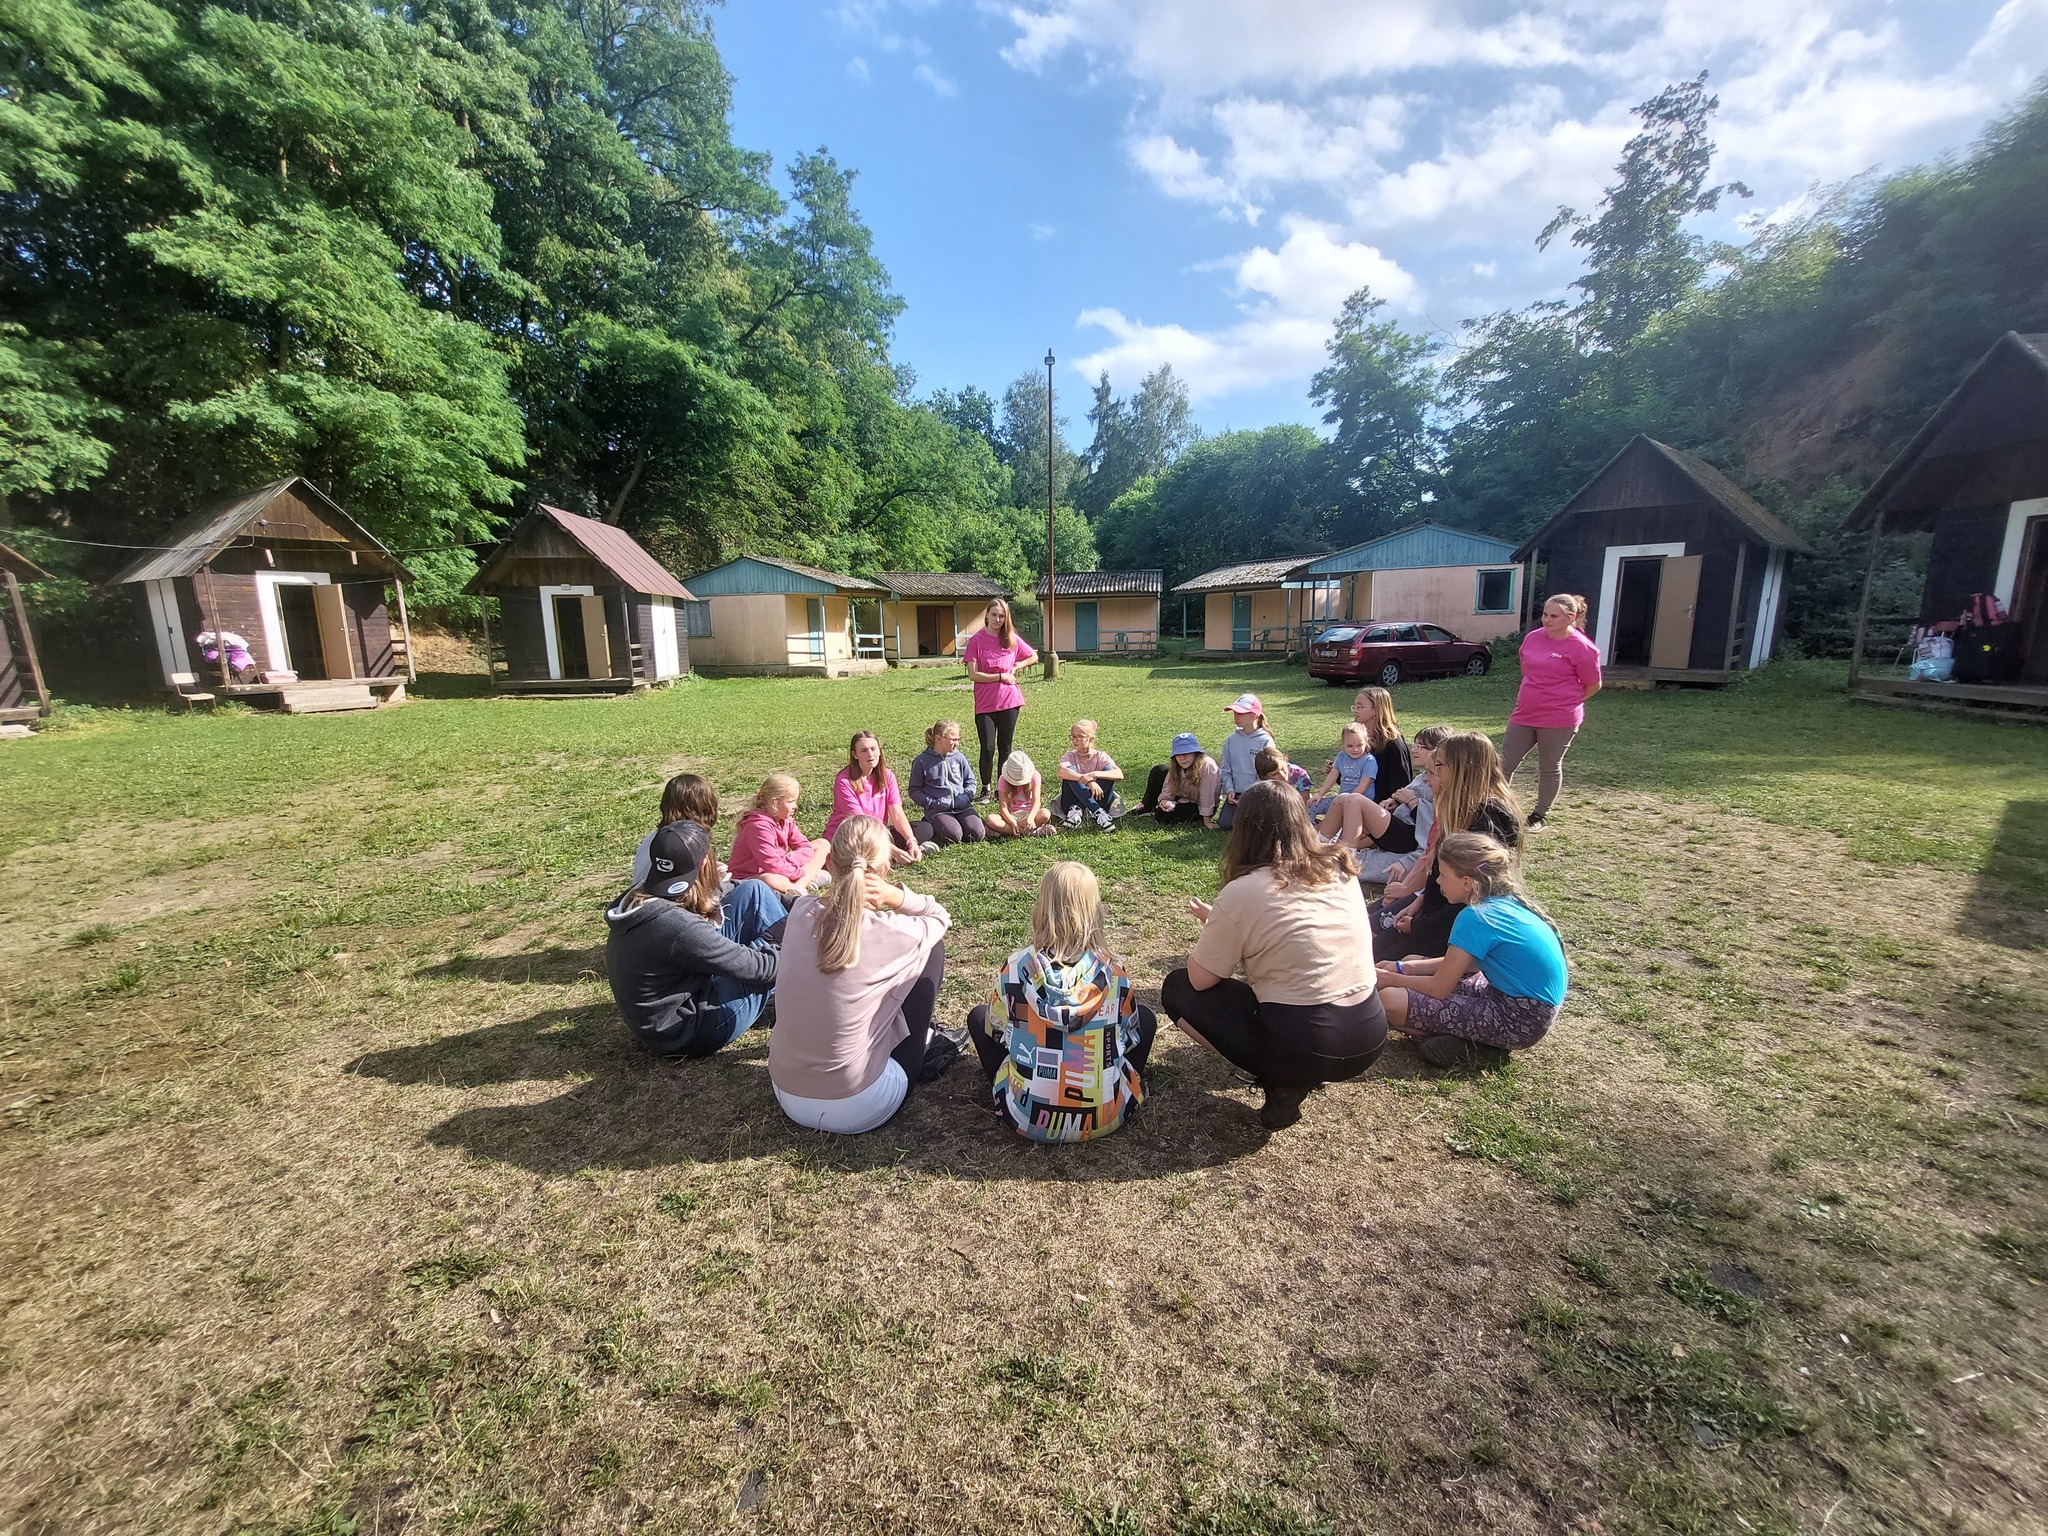 Děti na letním klasickém táboře sedí v kroužku u táborových chatek a povídají si společně.